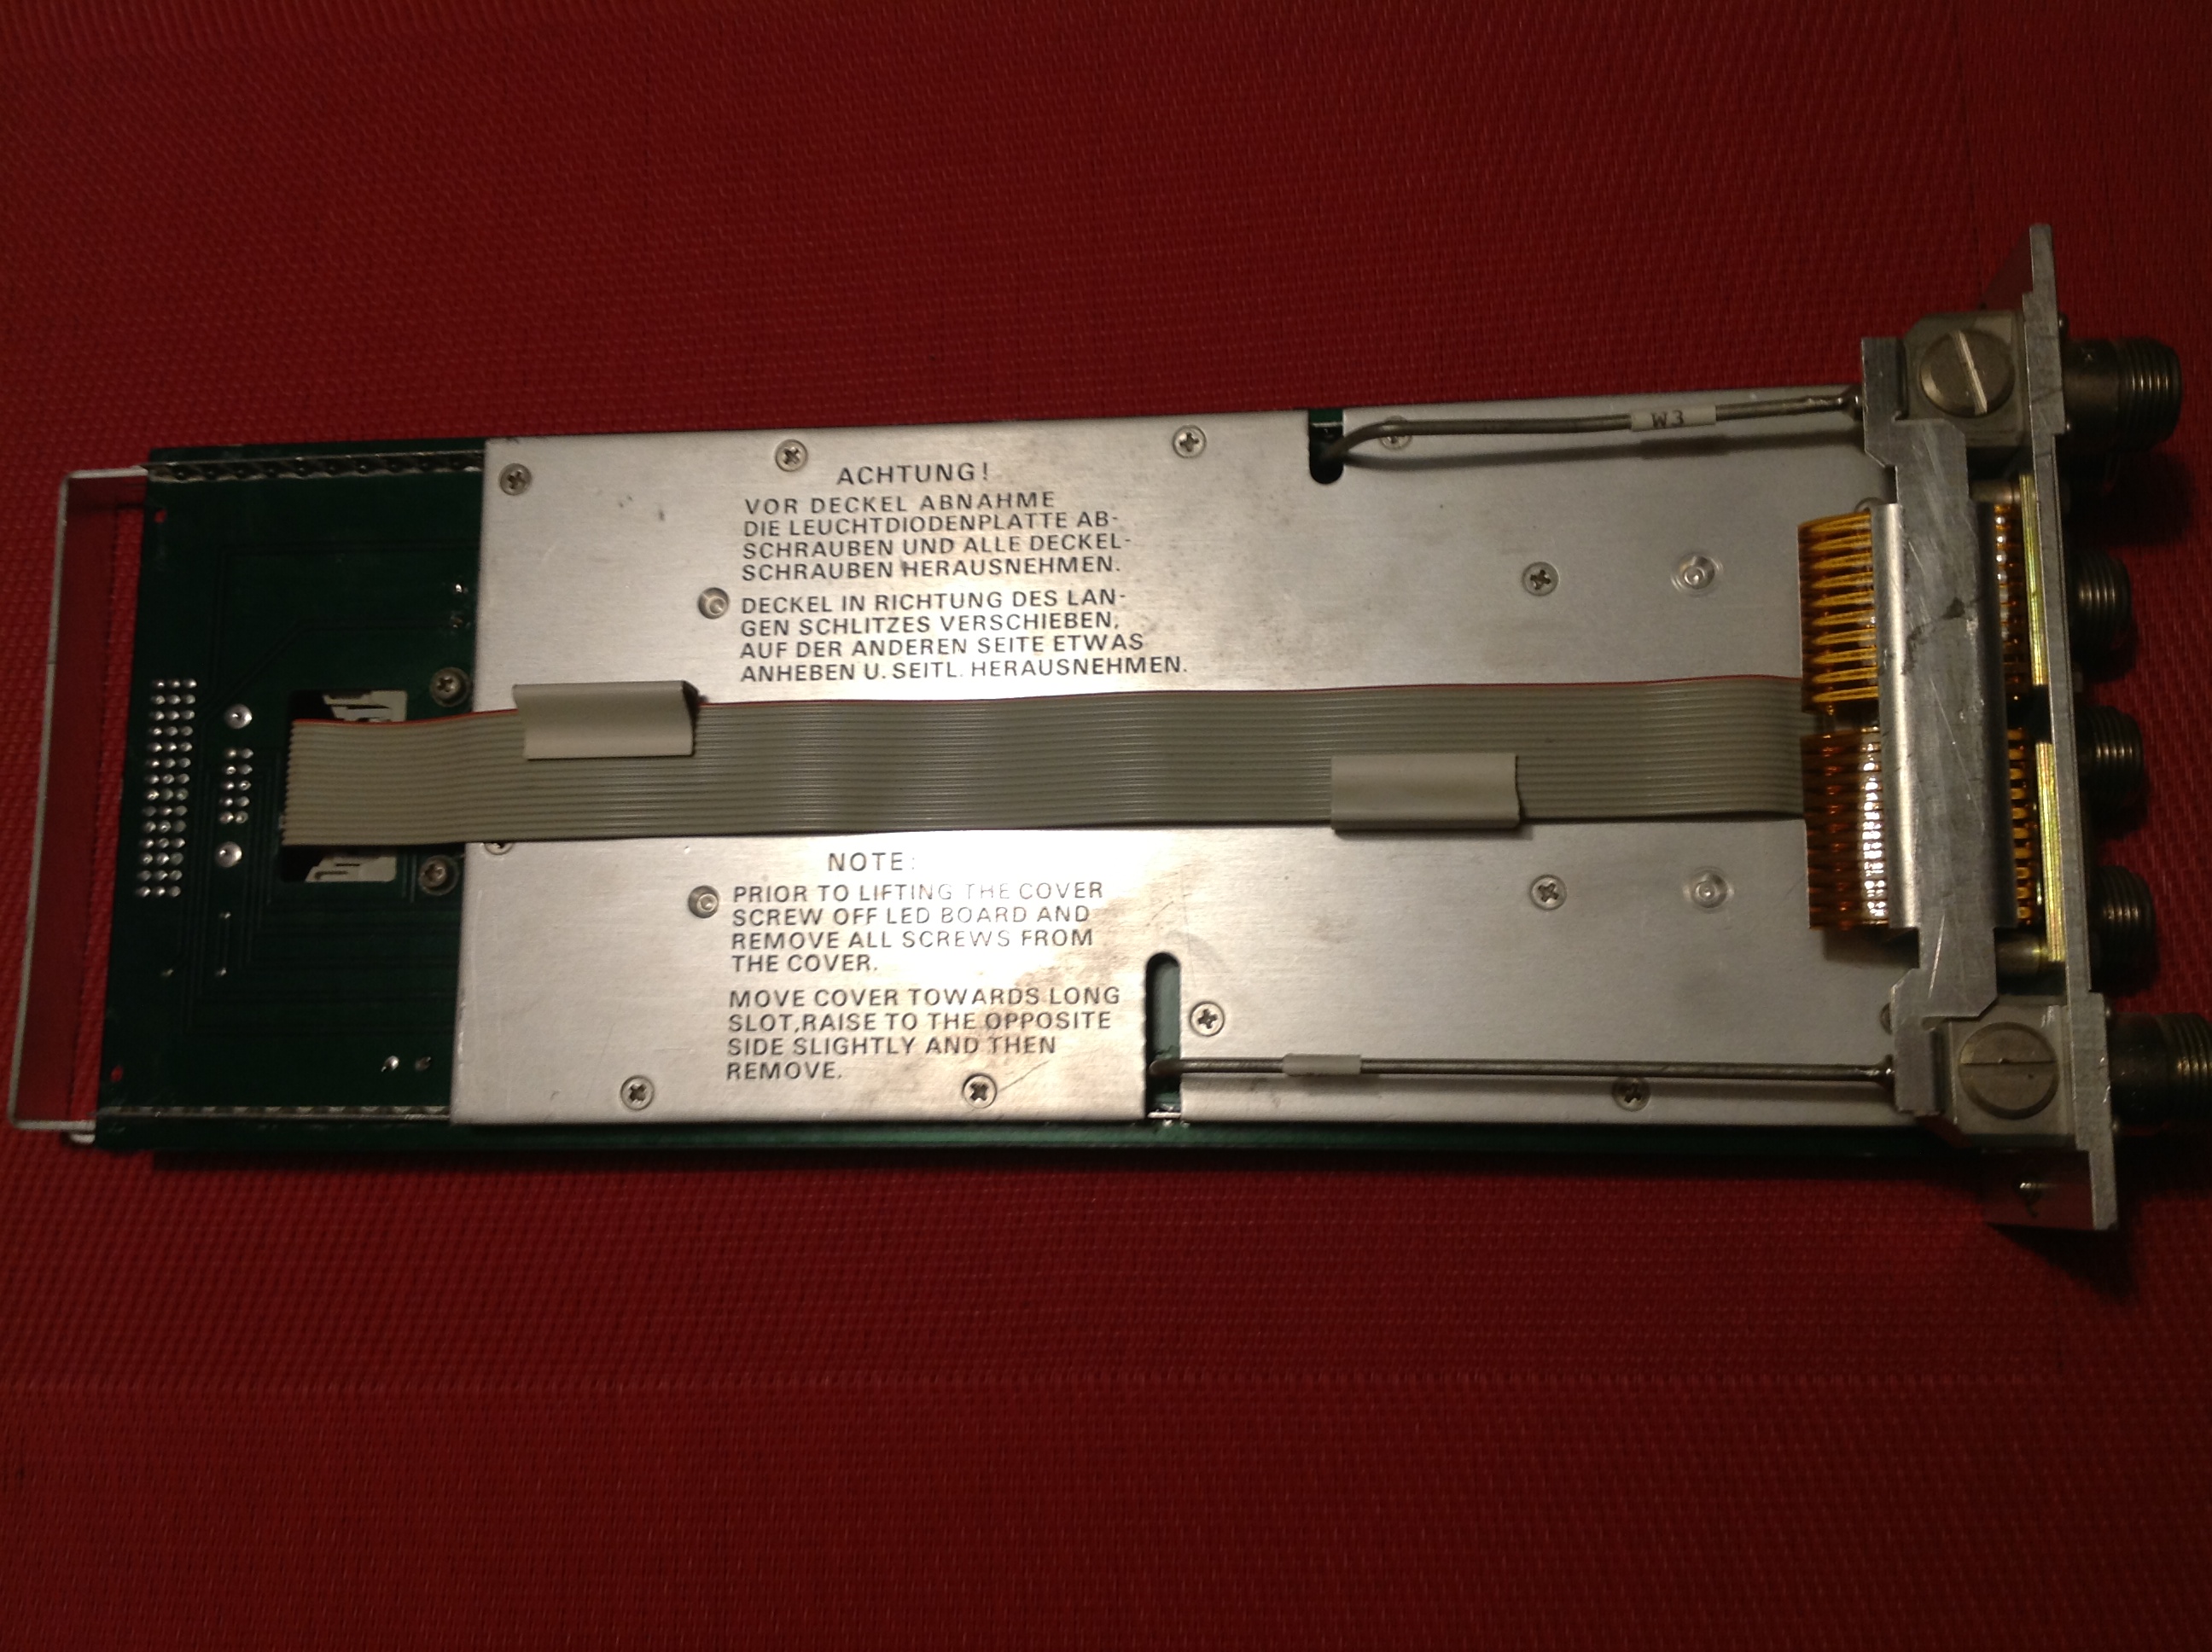 Rohde &amp; Schwarz Hochfrequenz-Schaltgruppe Model ZS 110 A1 IF - Selector ( Oszillator )